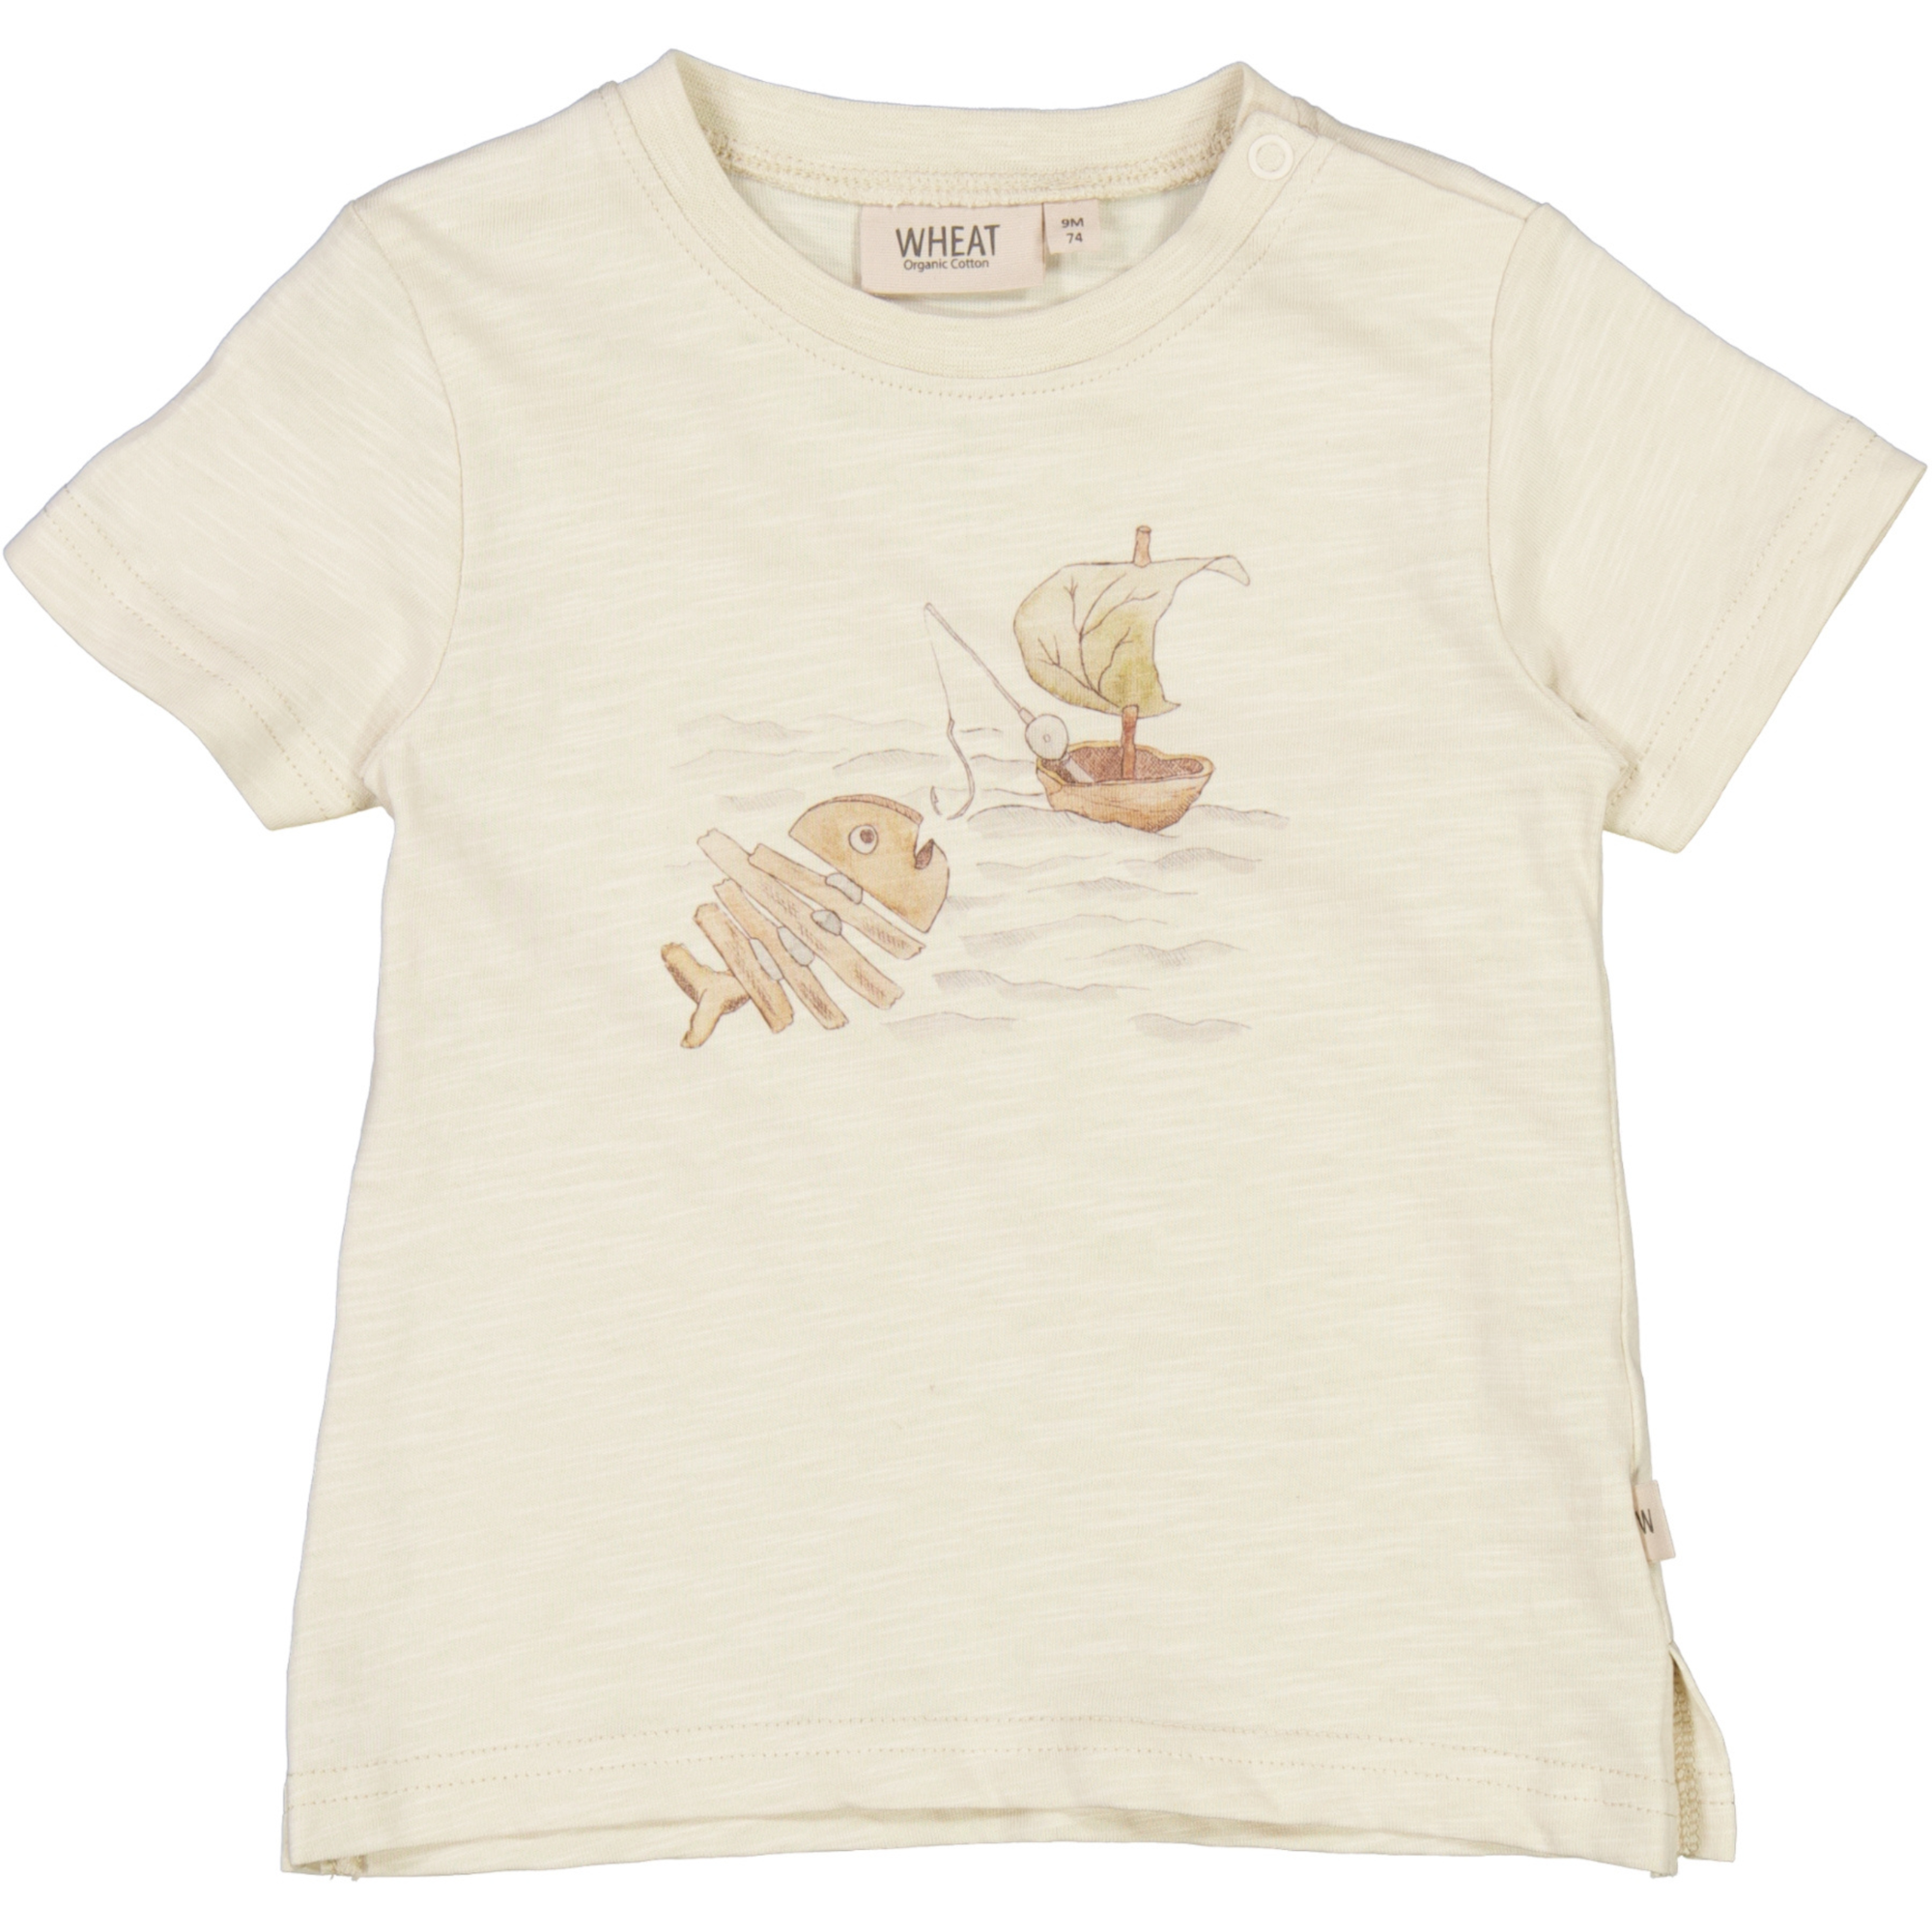 Wheat - T-shirt SS Fishing - Chalk